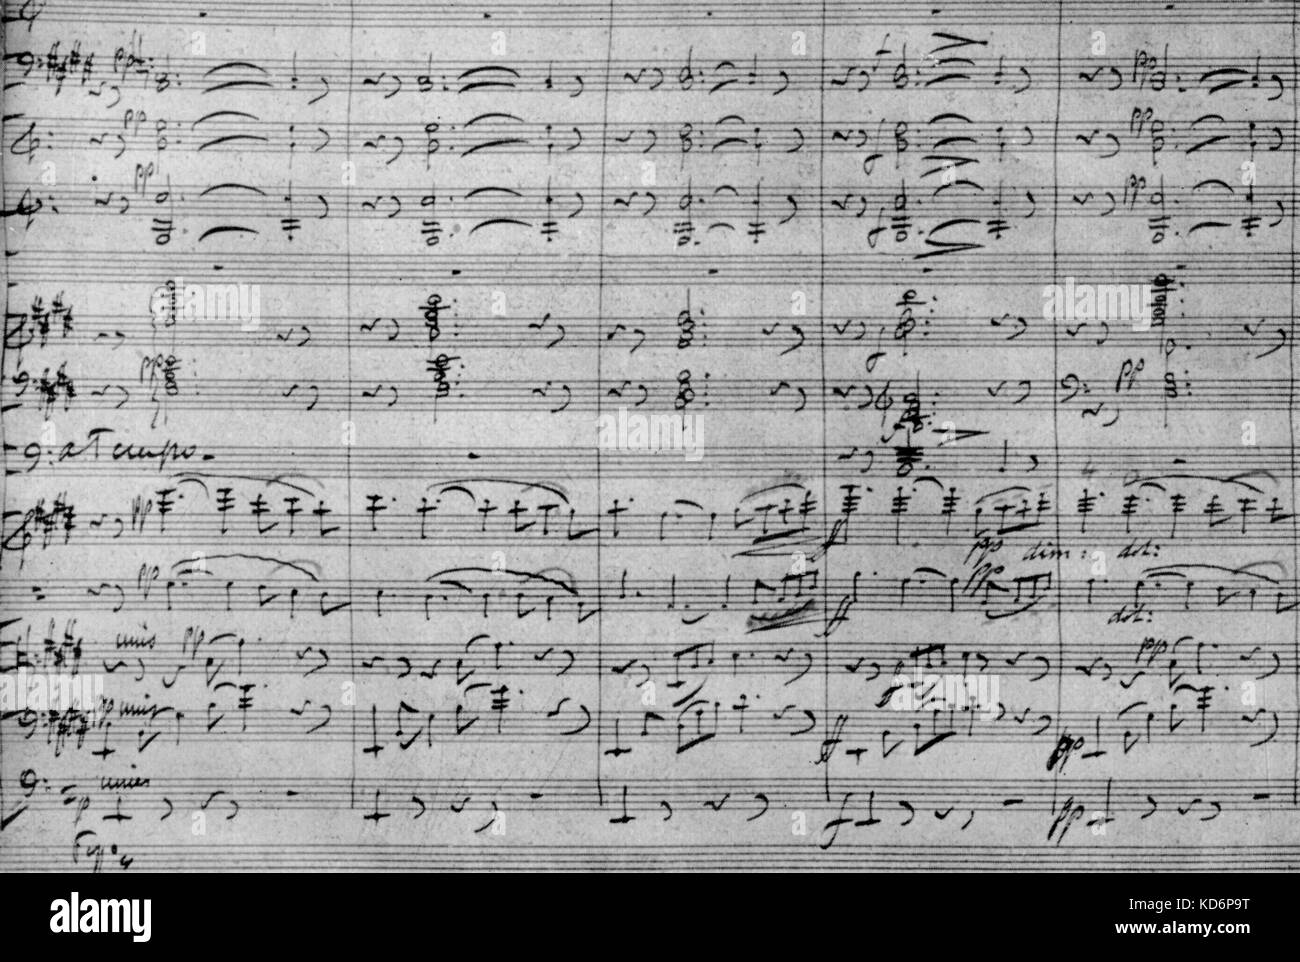 Jules Massenet - uno spartito musicale da parte del compositore francese del preludio al terzo atto della sua opera "Herodiade'. 12 Maggio 1842 - 13 agosto 1912. Foto Stock